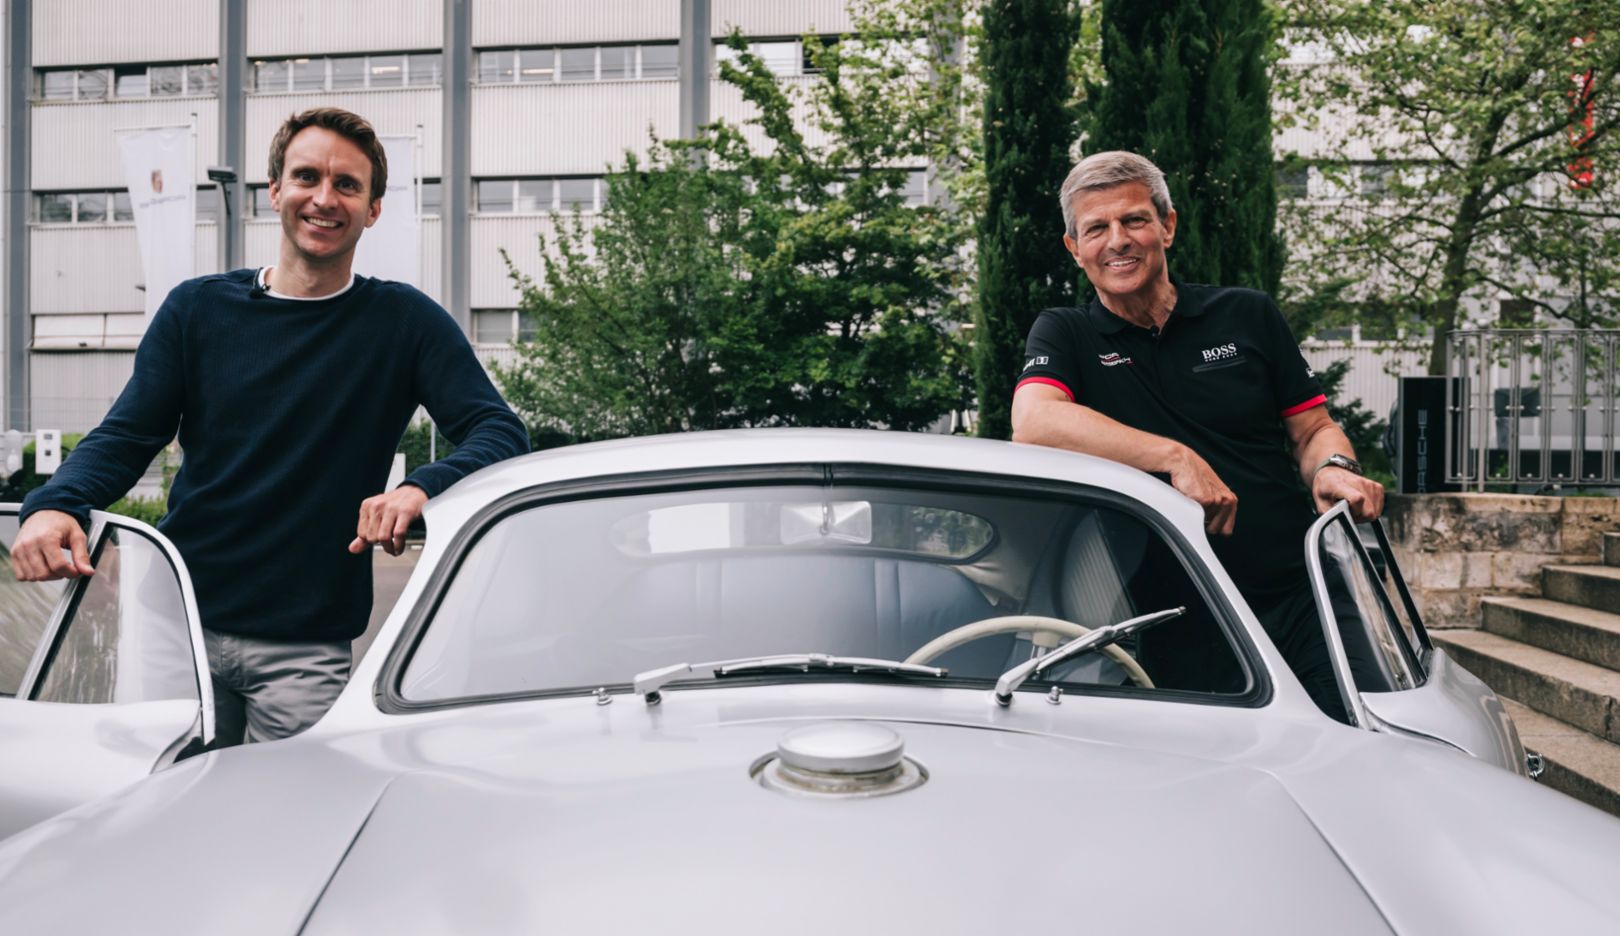 The Porsche success story at Le Mans